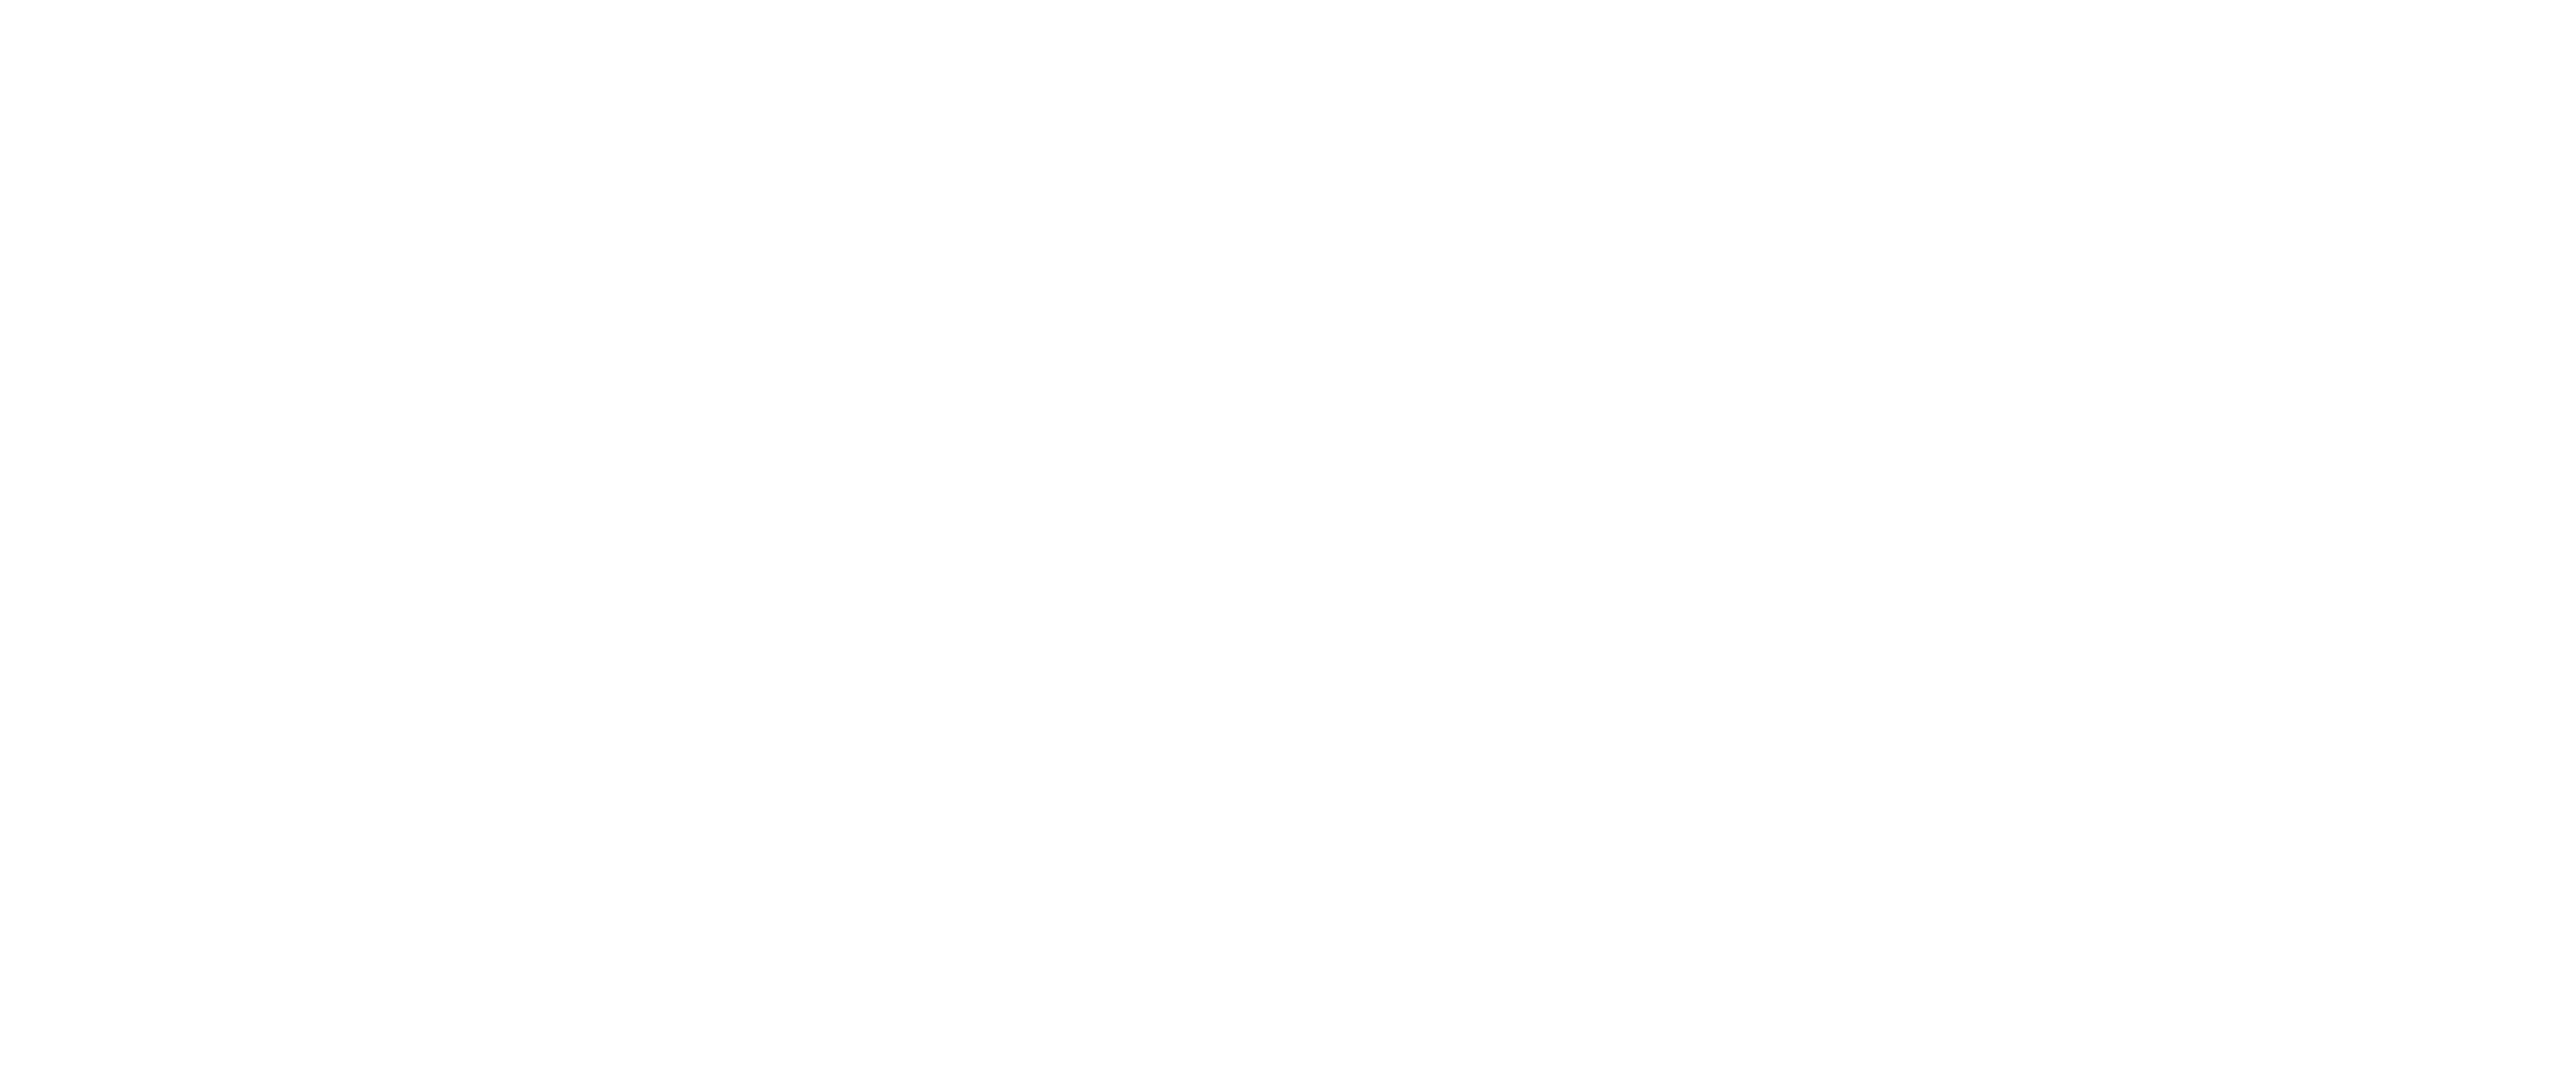 The Sychar Gospel Fund logo